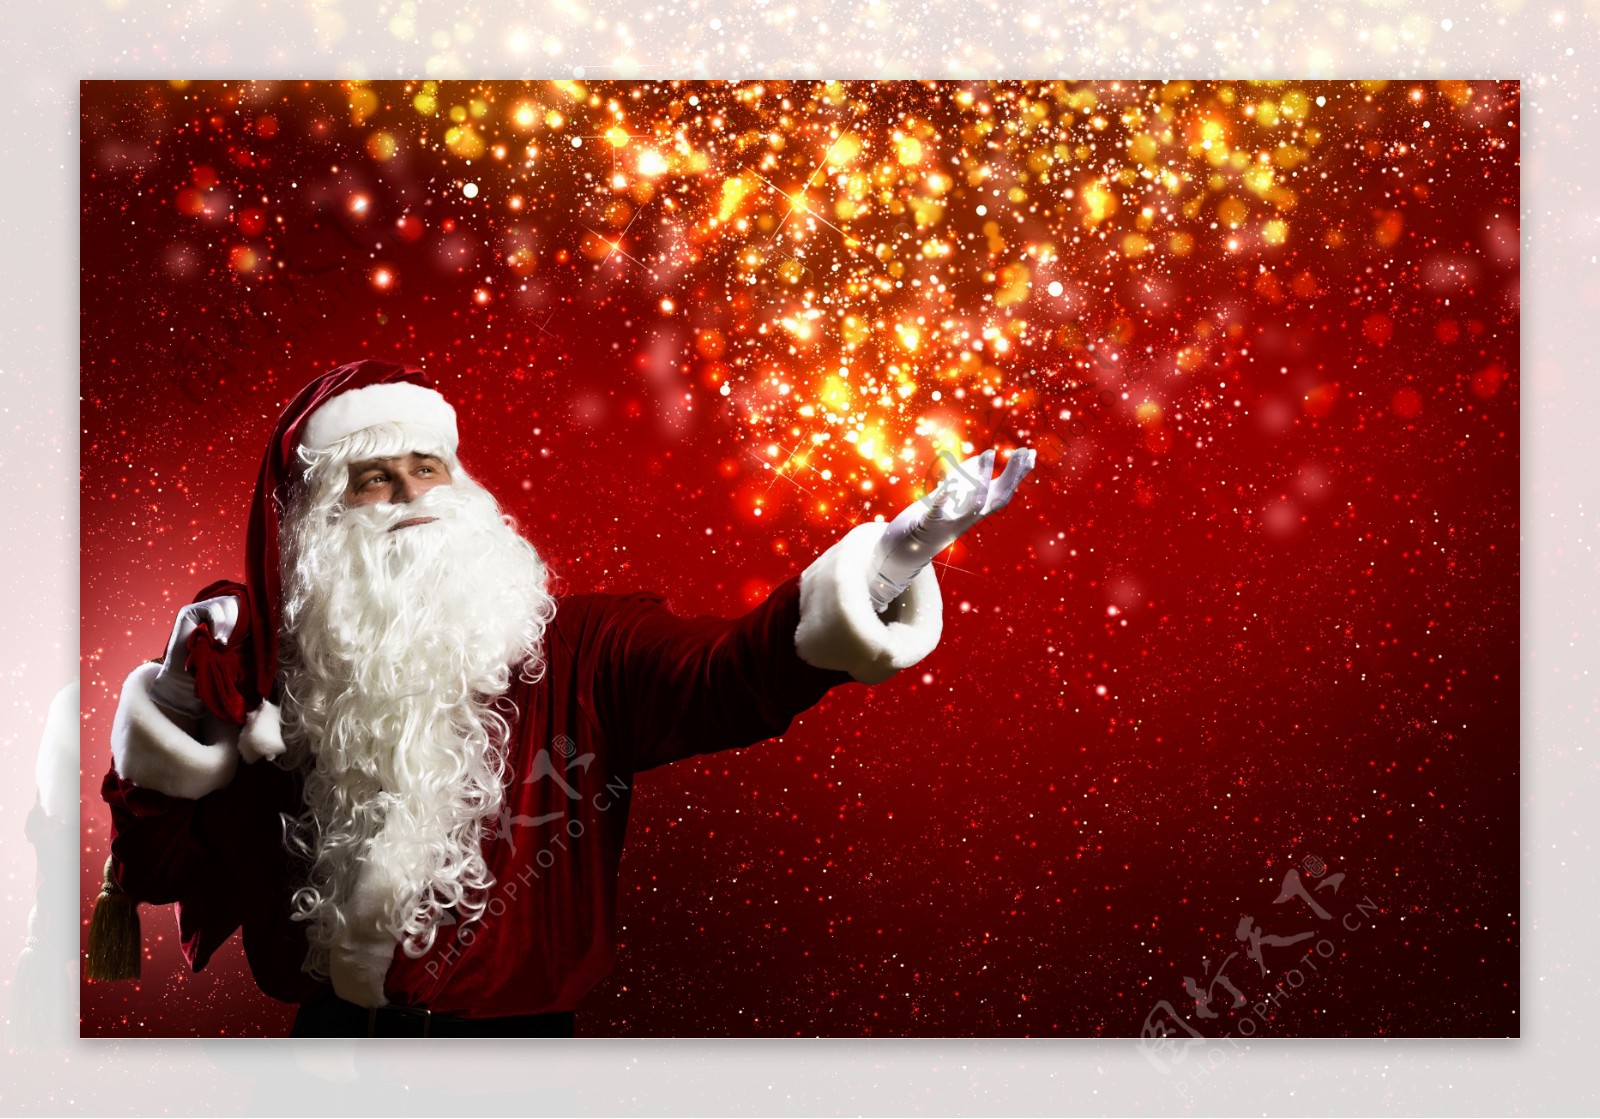 圣诞老人与红色星斑背景图片